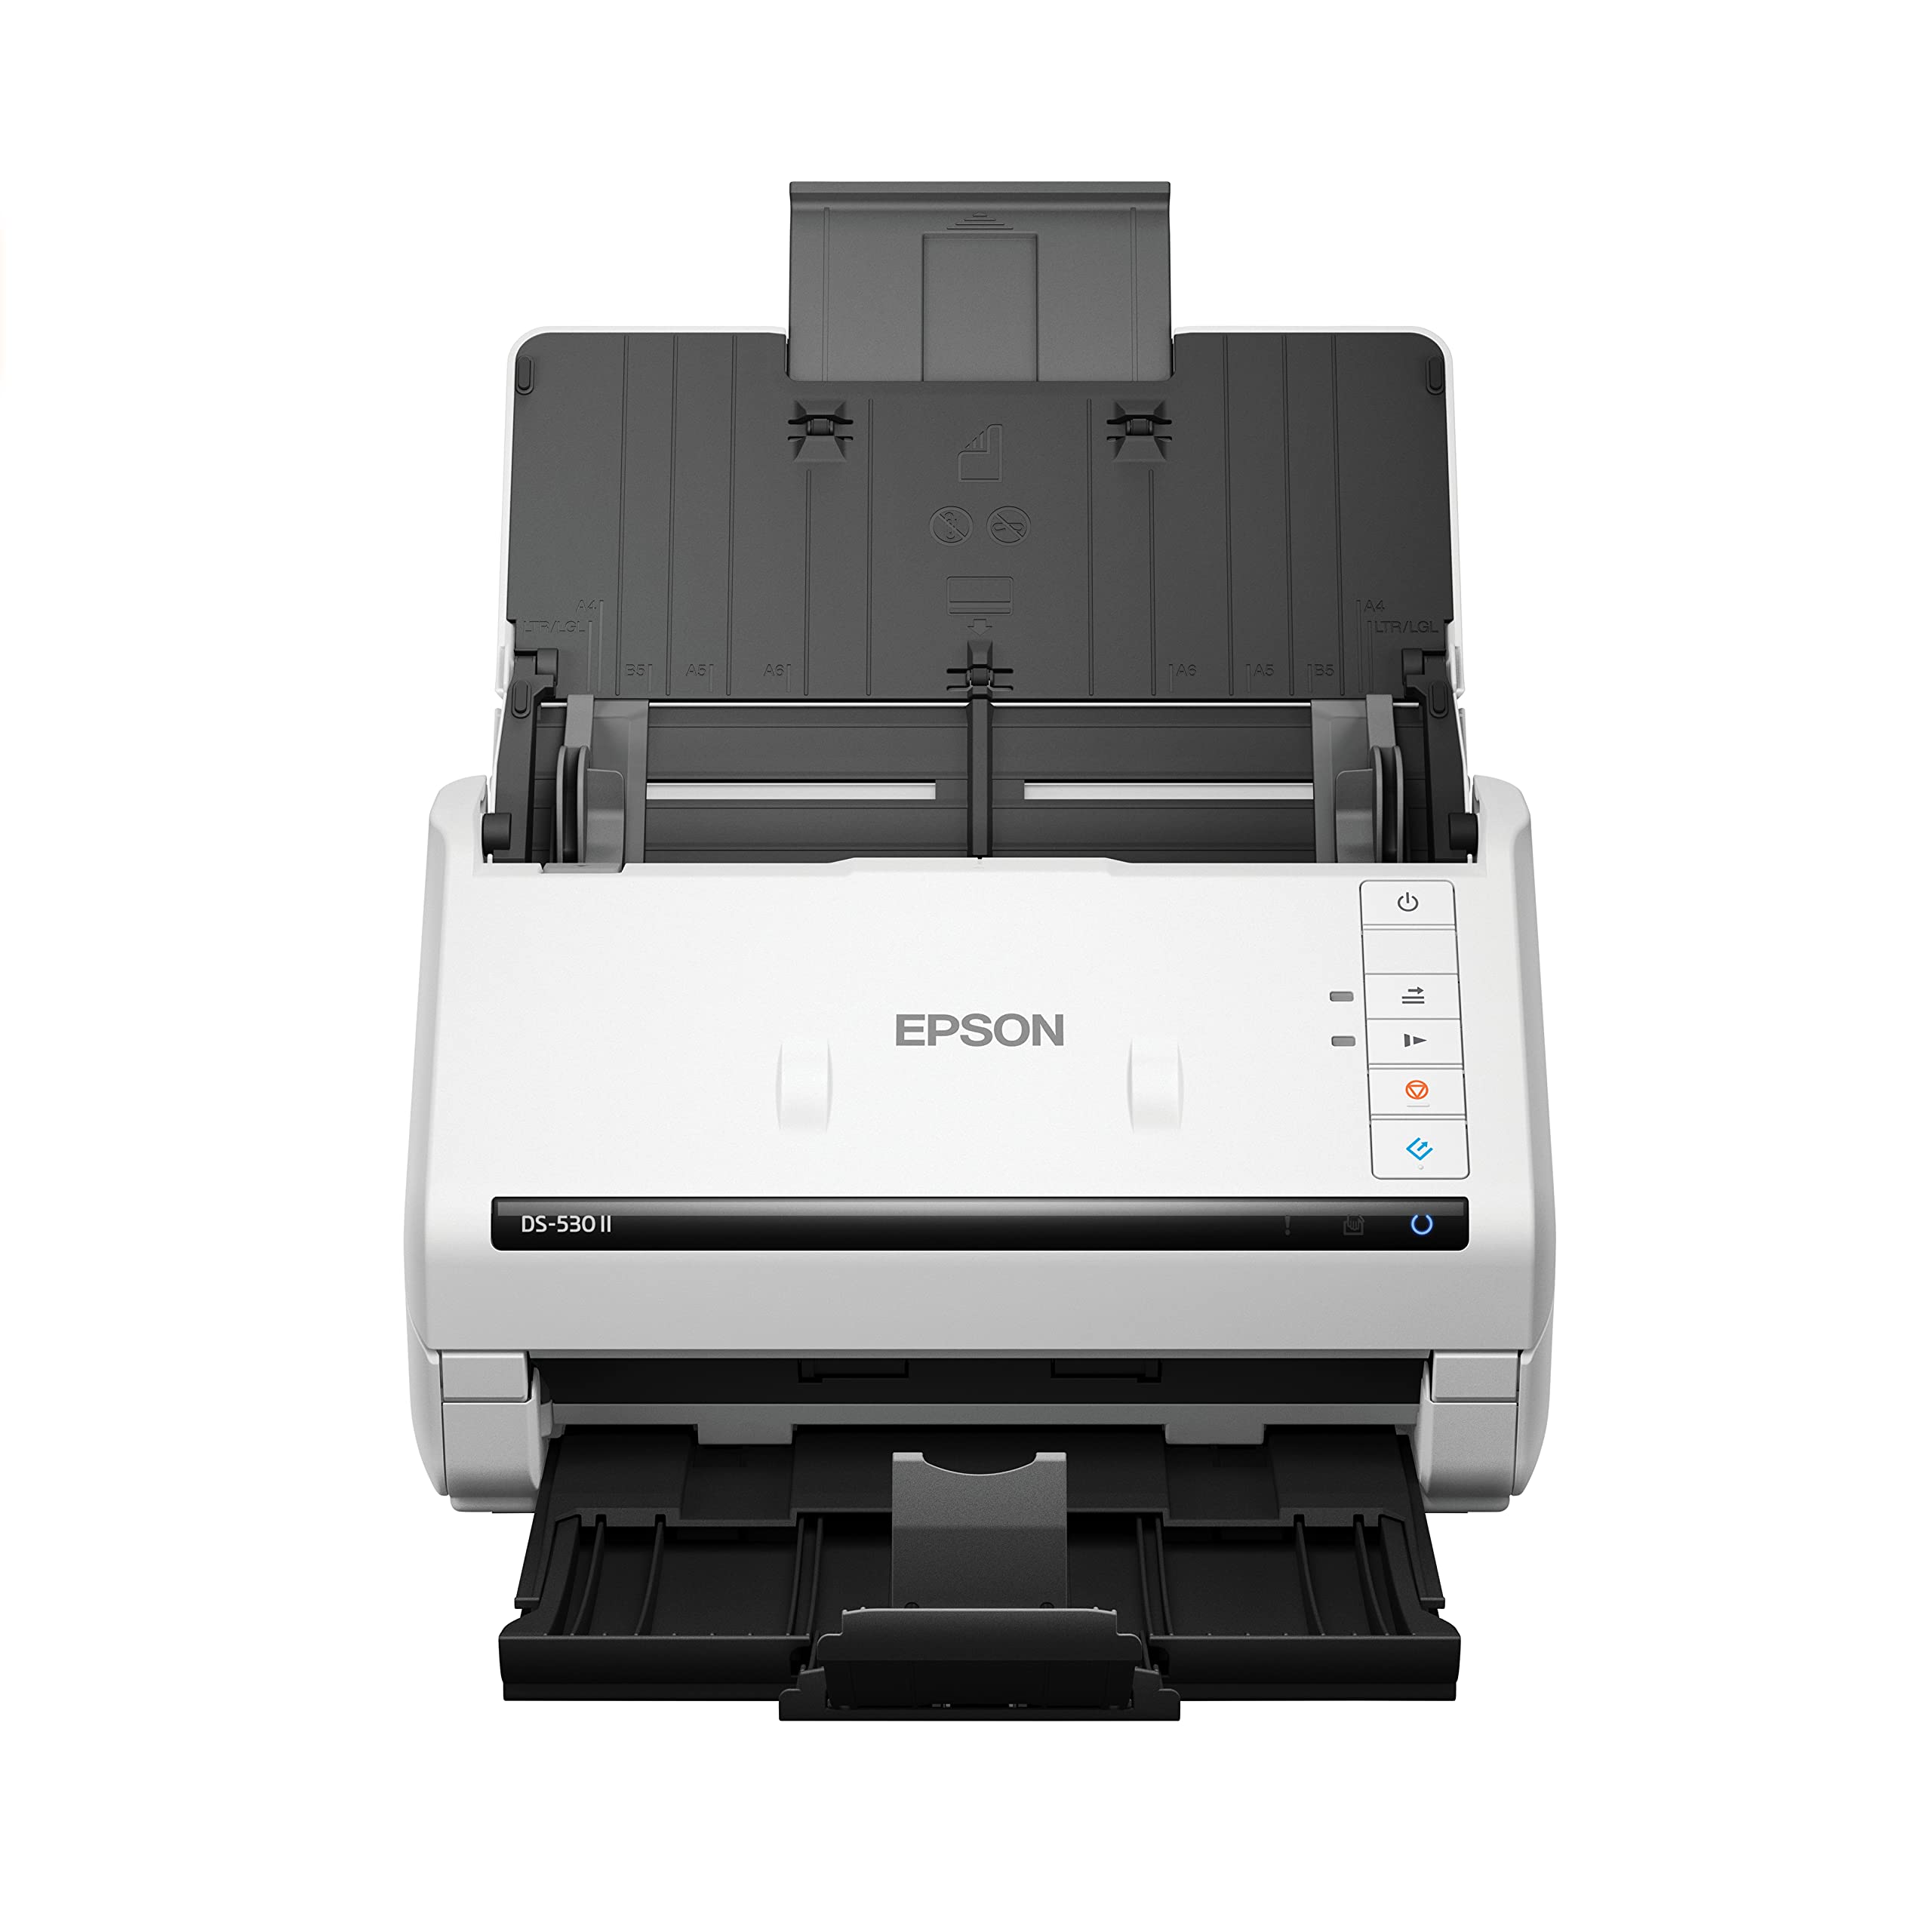 Epson Escáner de documentos dúplex a color DS-530 II para PC y Mac con alimentador automático de documentos (ADF) alimentado por hojas